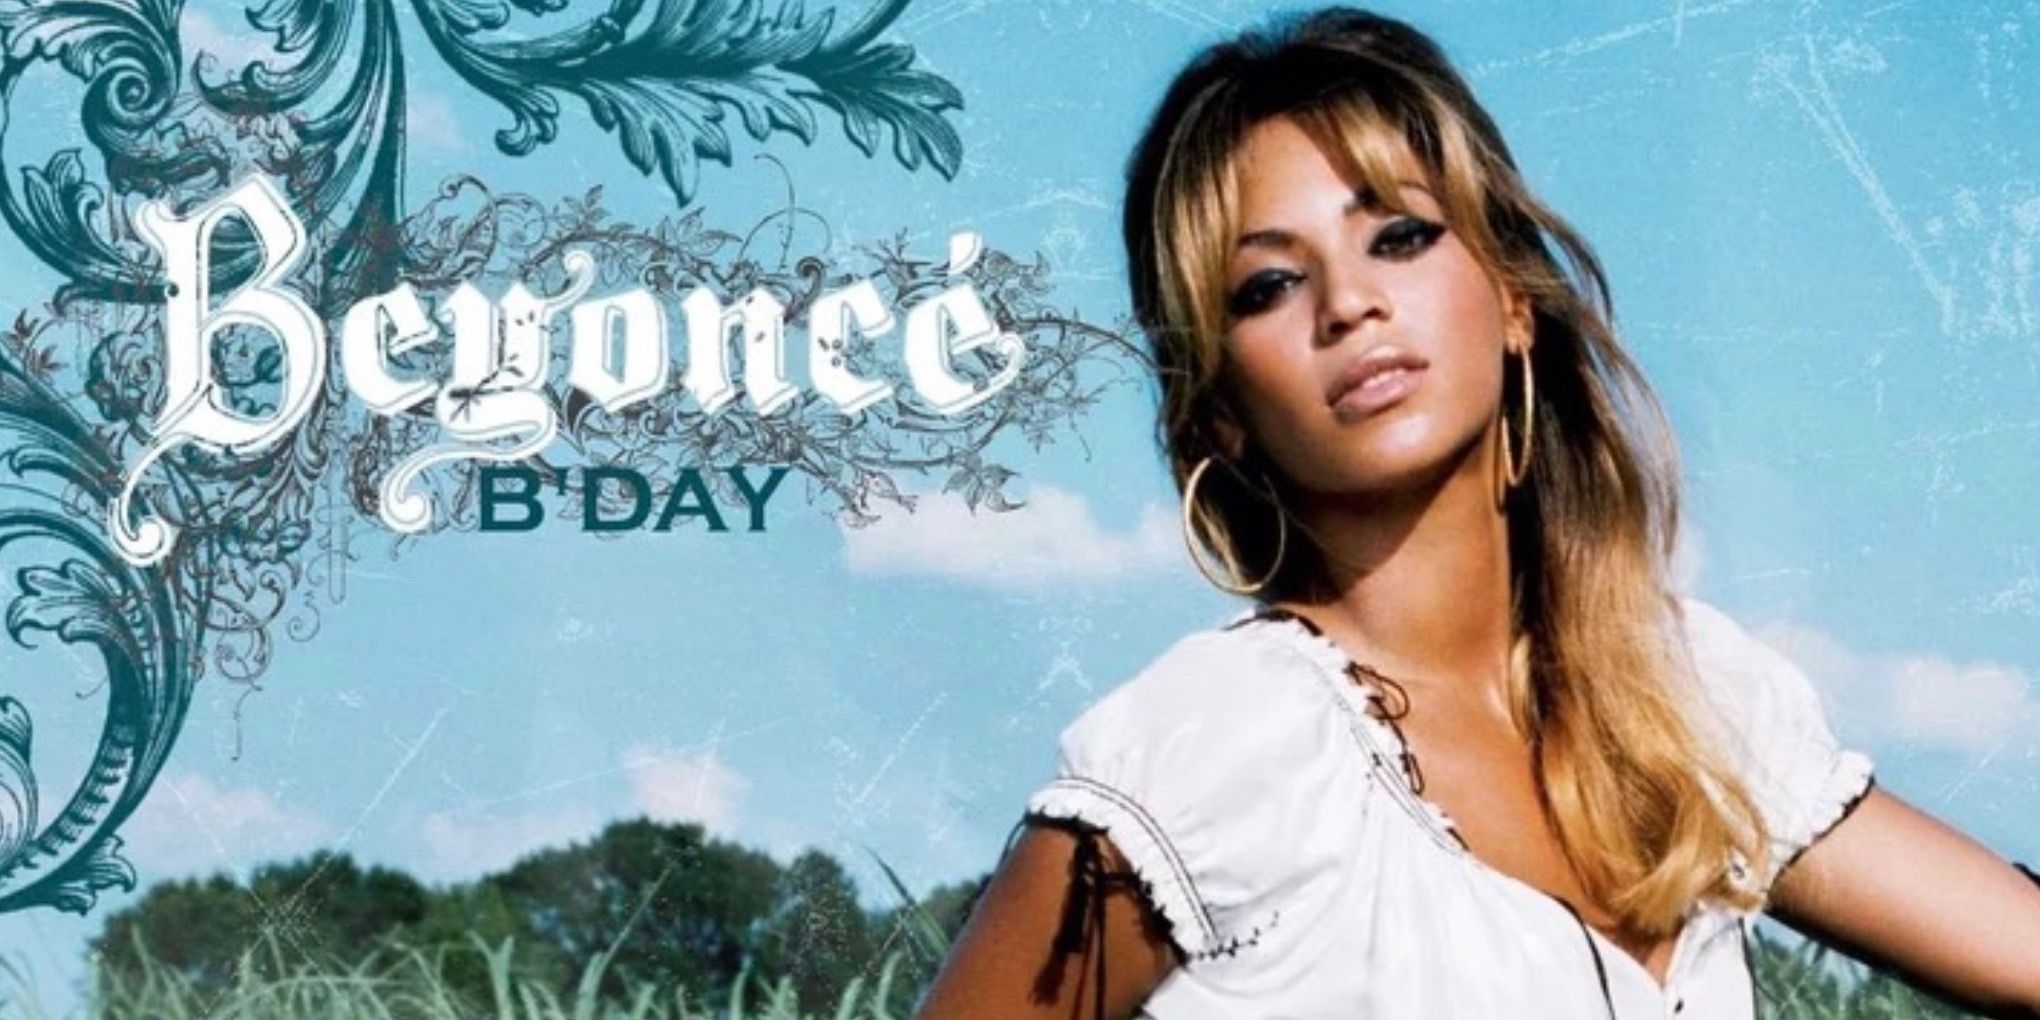 Beyoncé B-Day (2006)